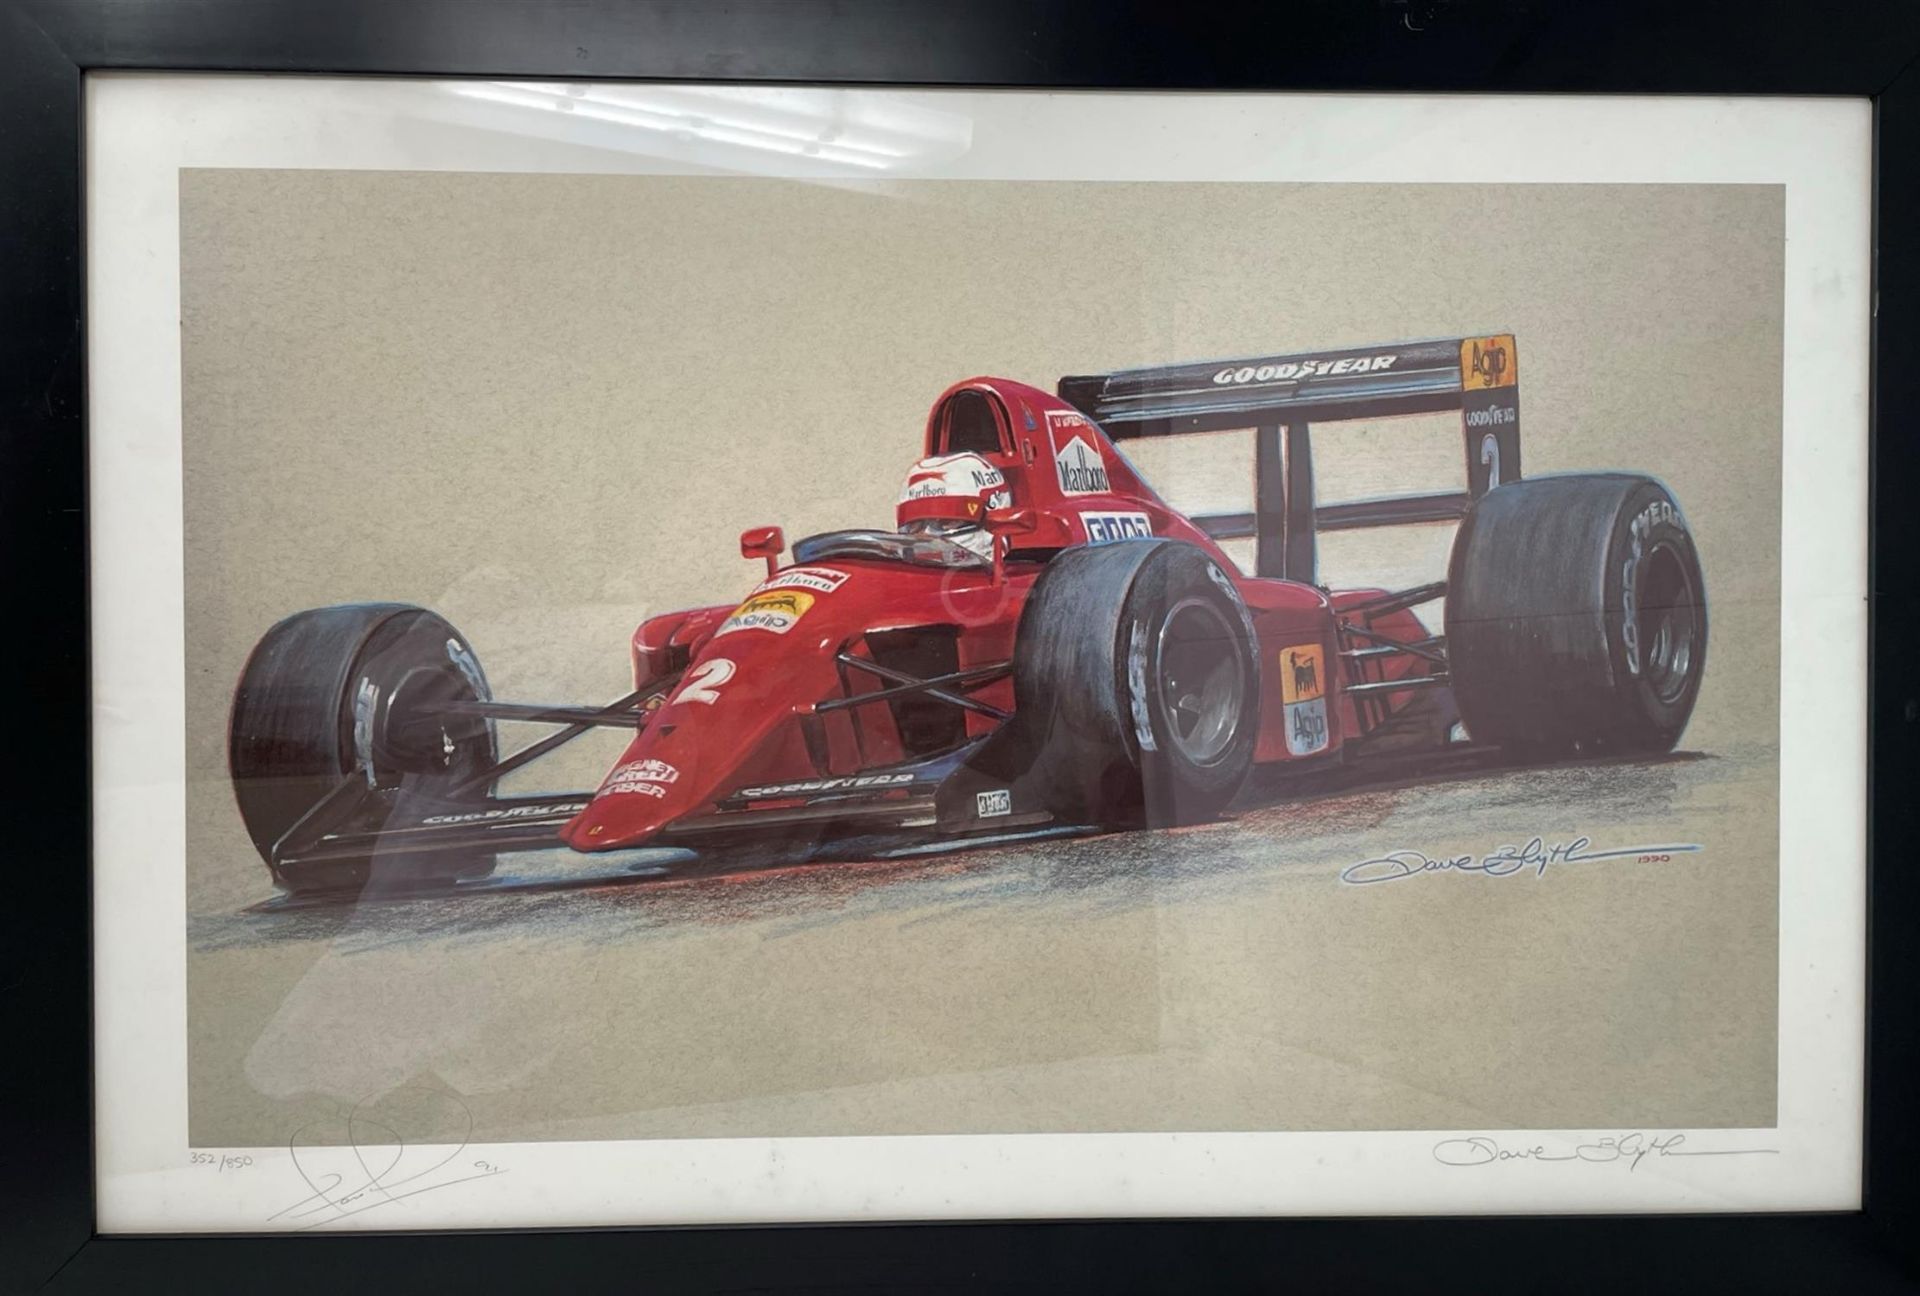 Signed Framed Print of Nigel Mansell in the Ferrari 614B - Image 4 of 5